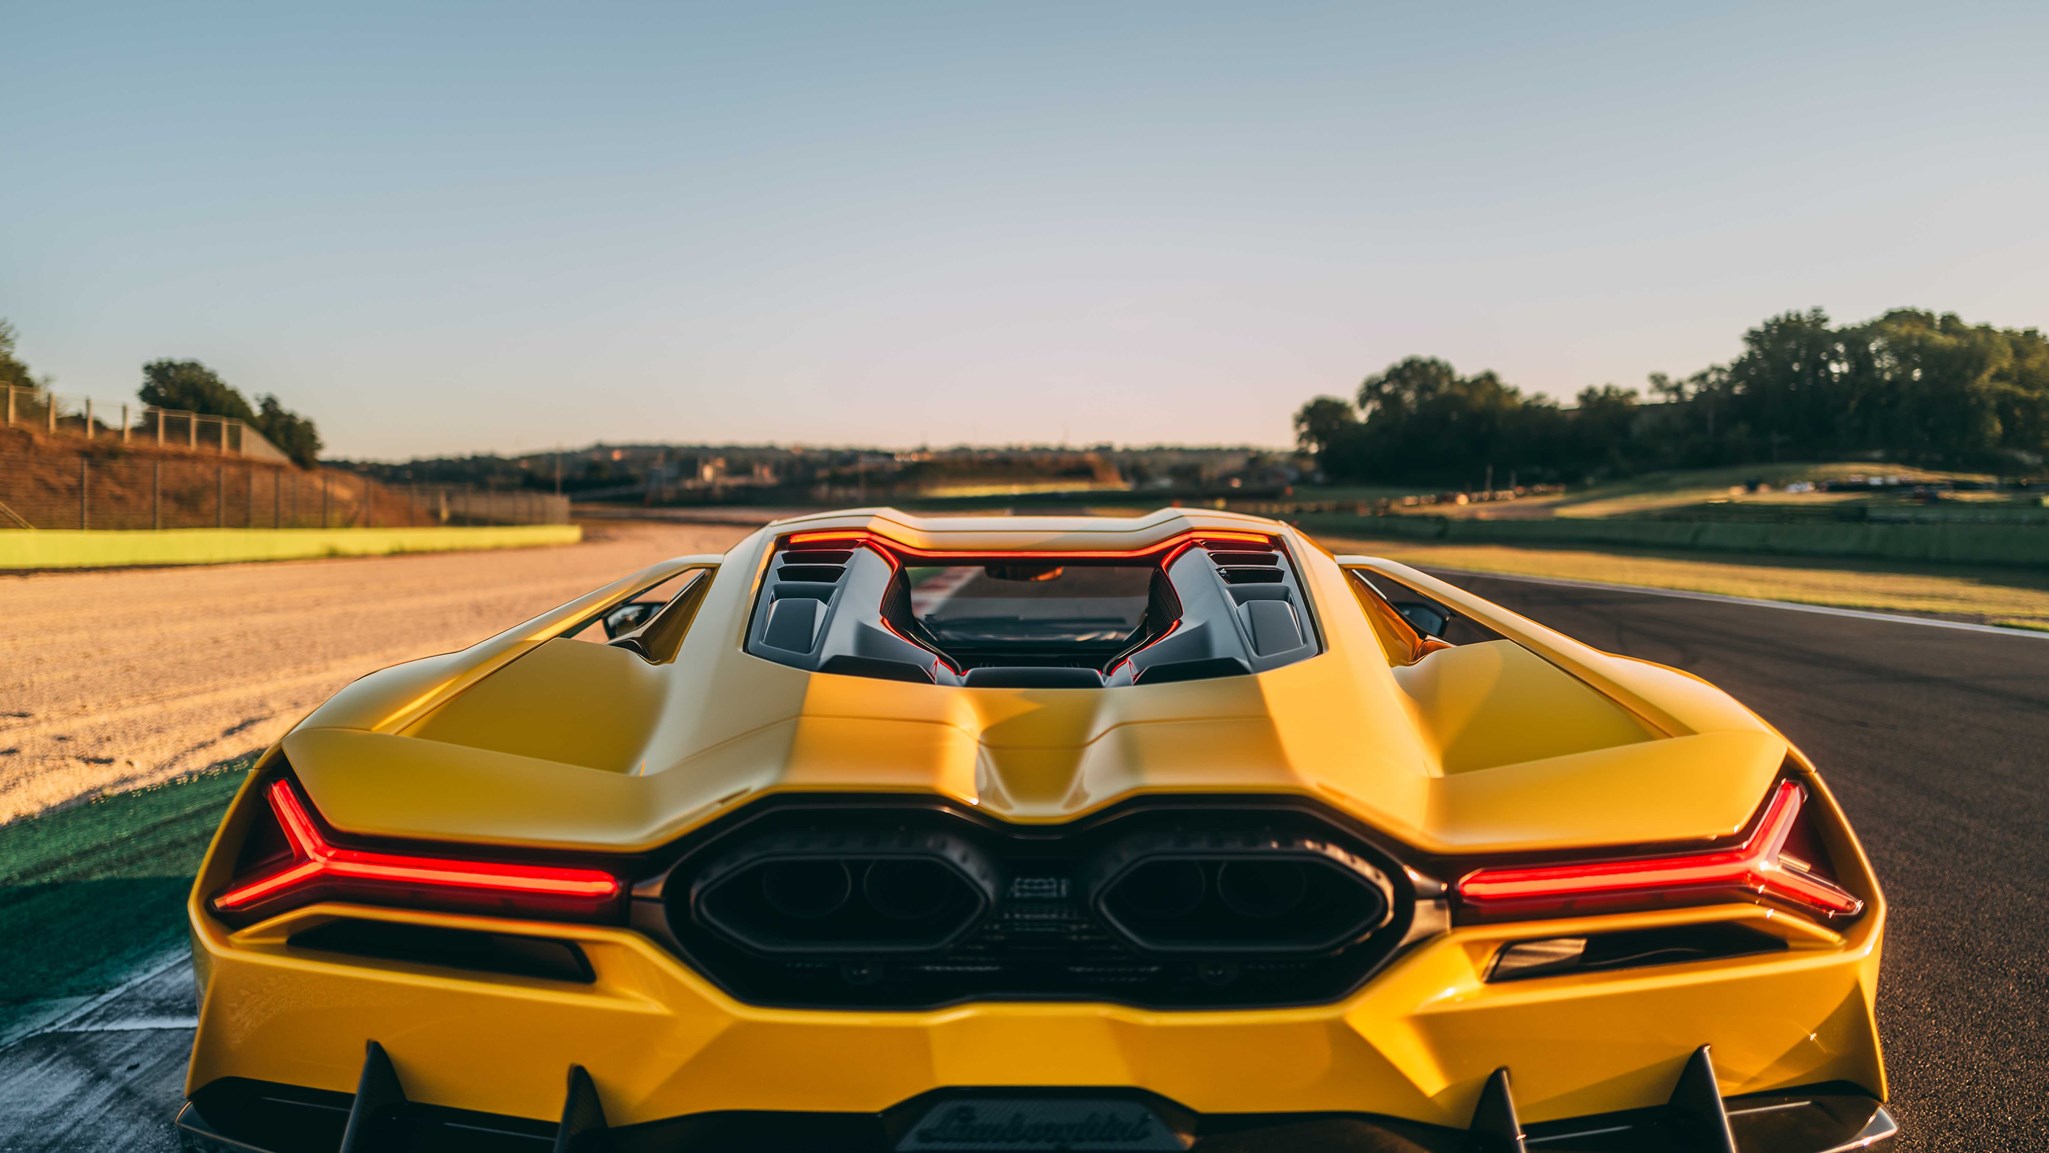 Lamborghini Revuelto engine cover and exhausts